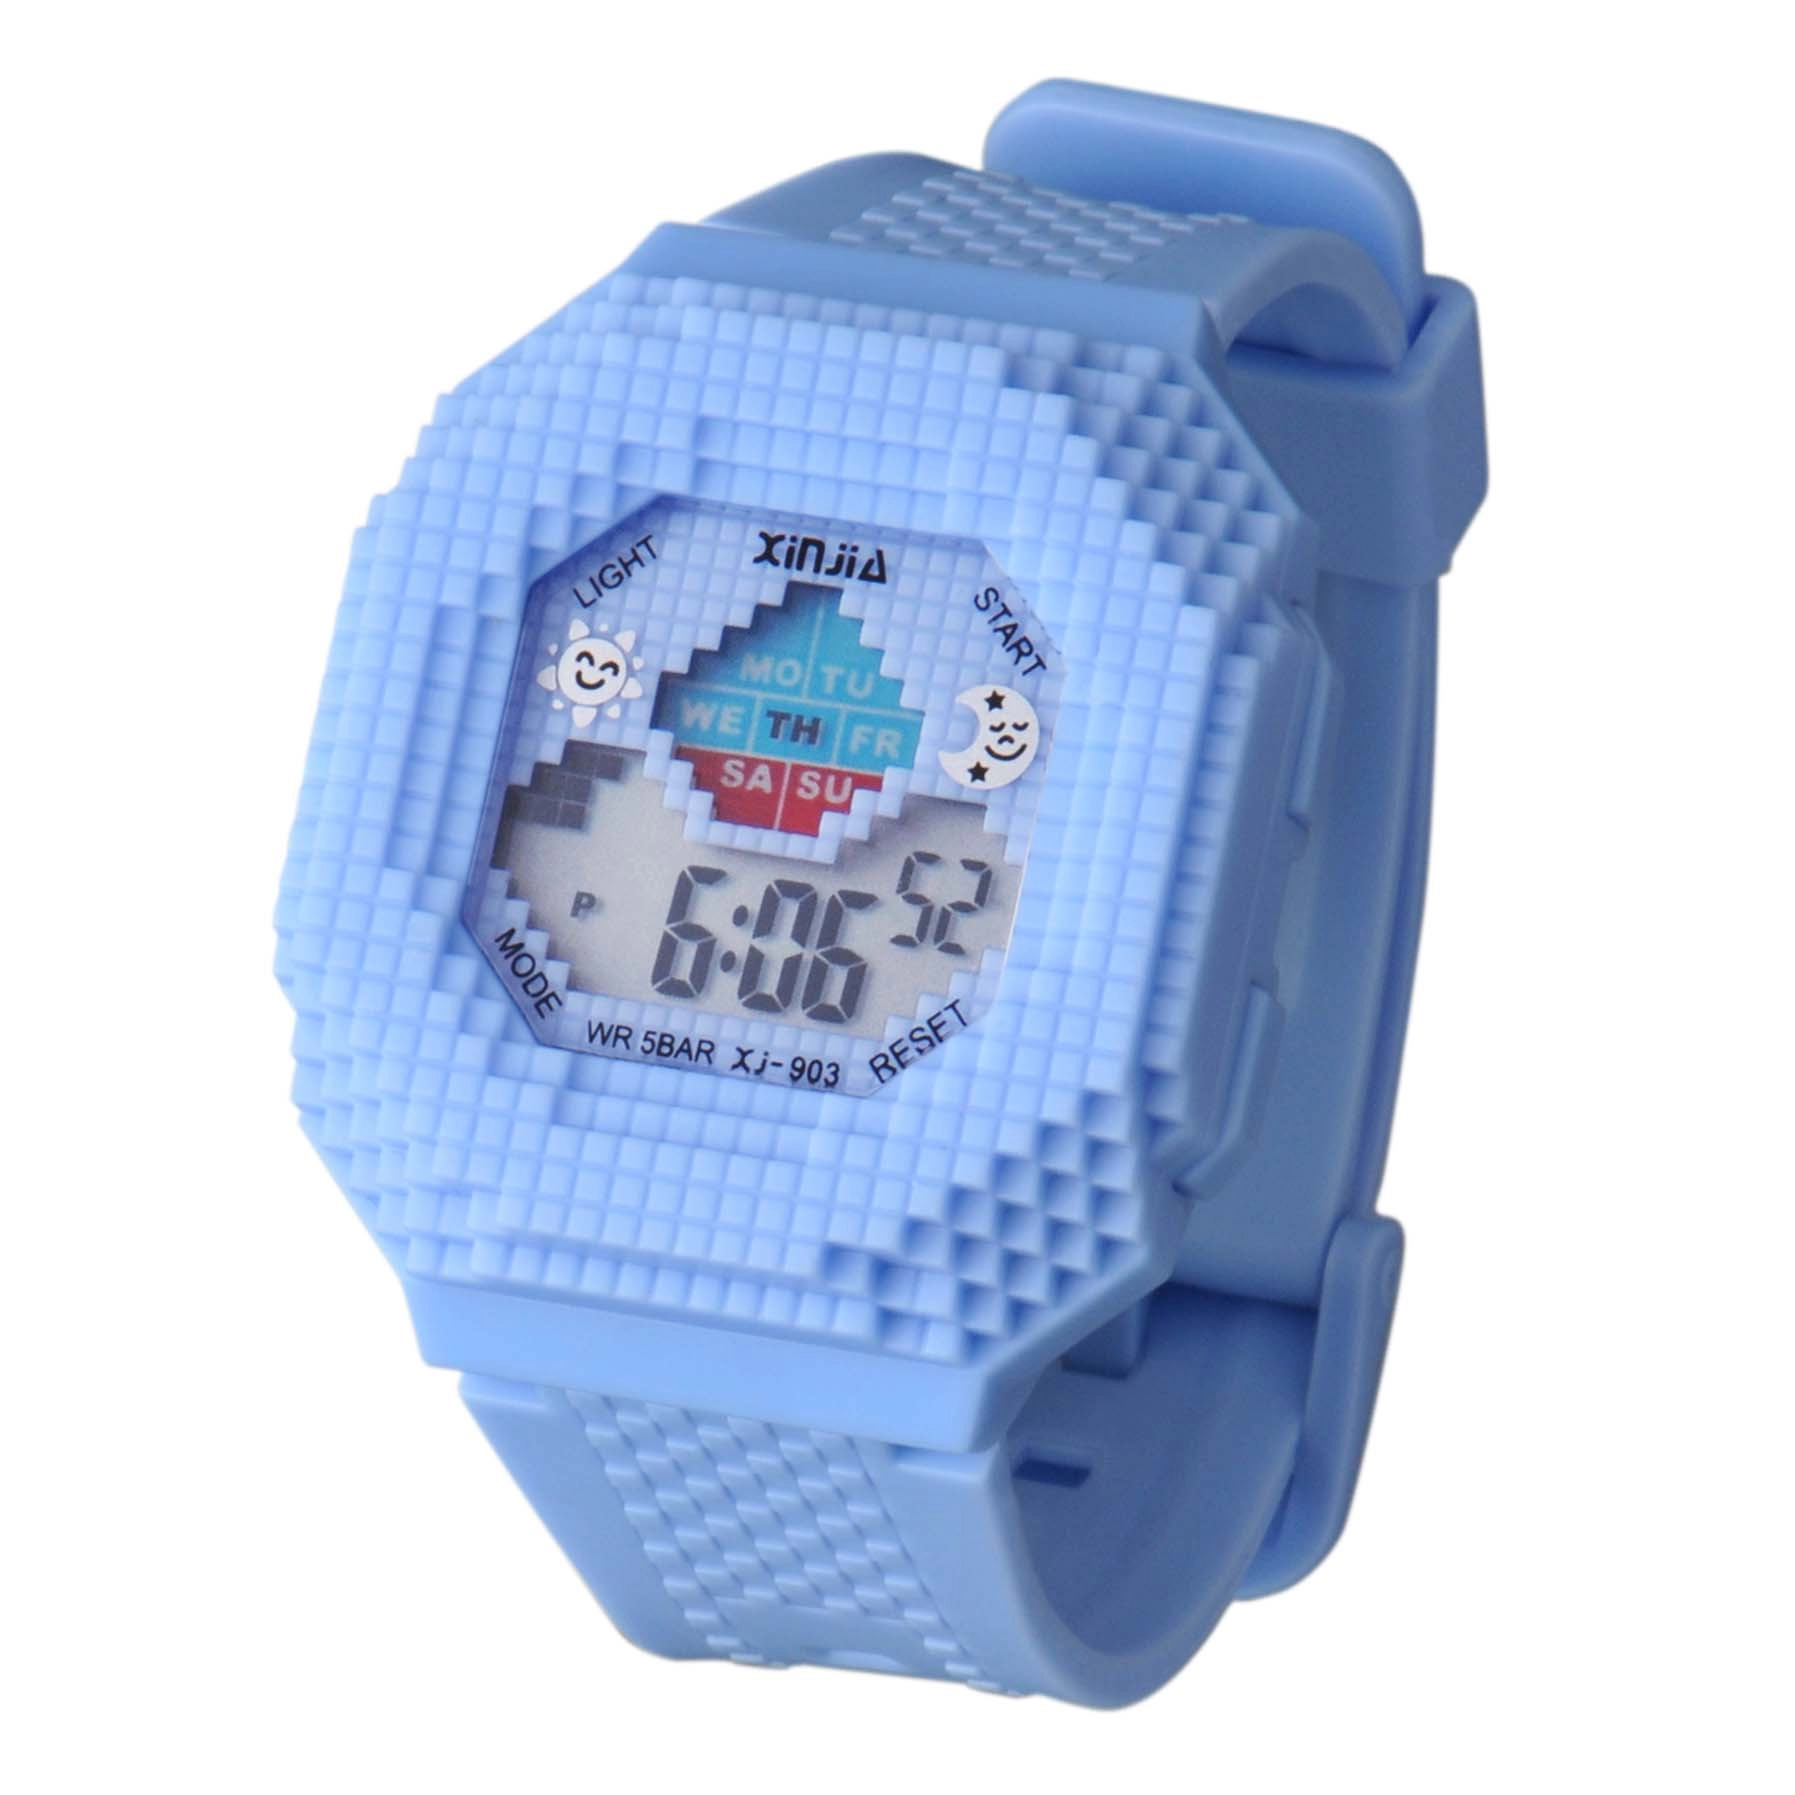 Waterproof Digital Wrist Watch In Promotion